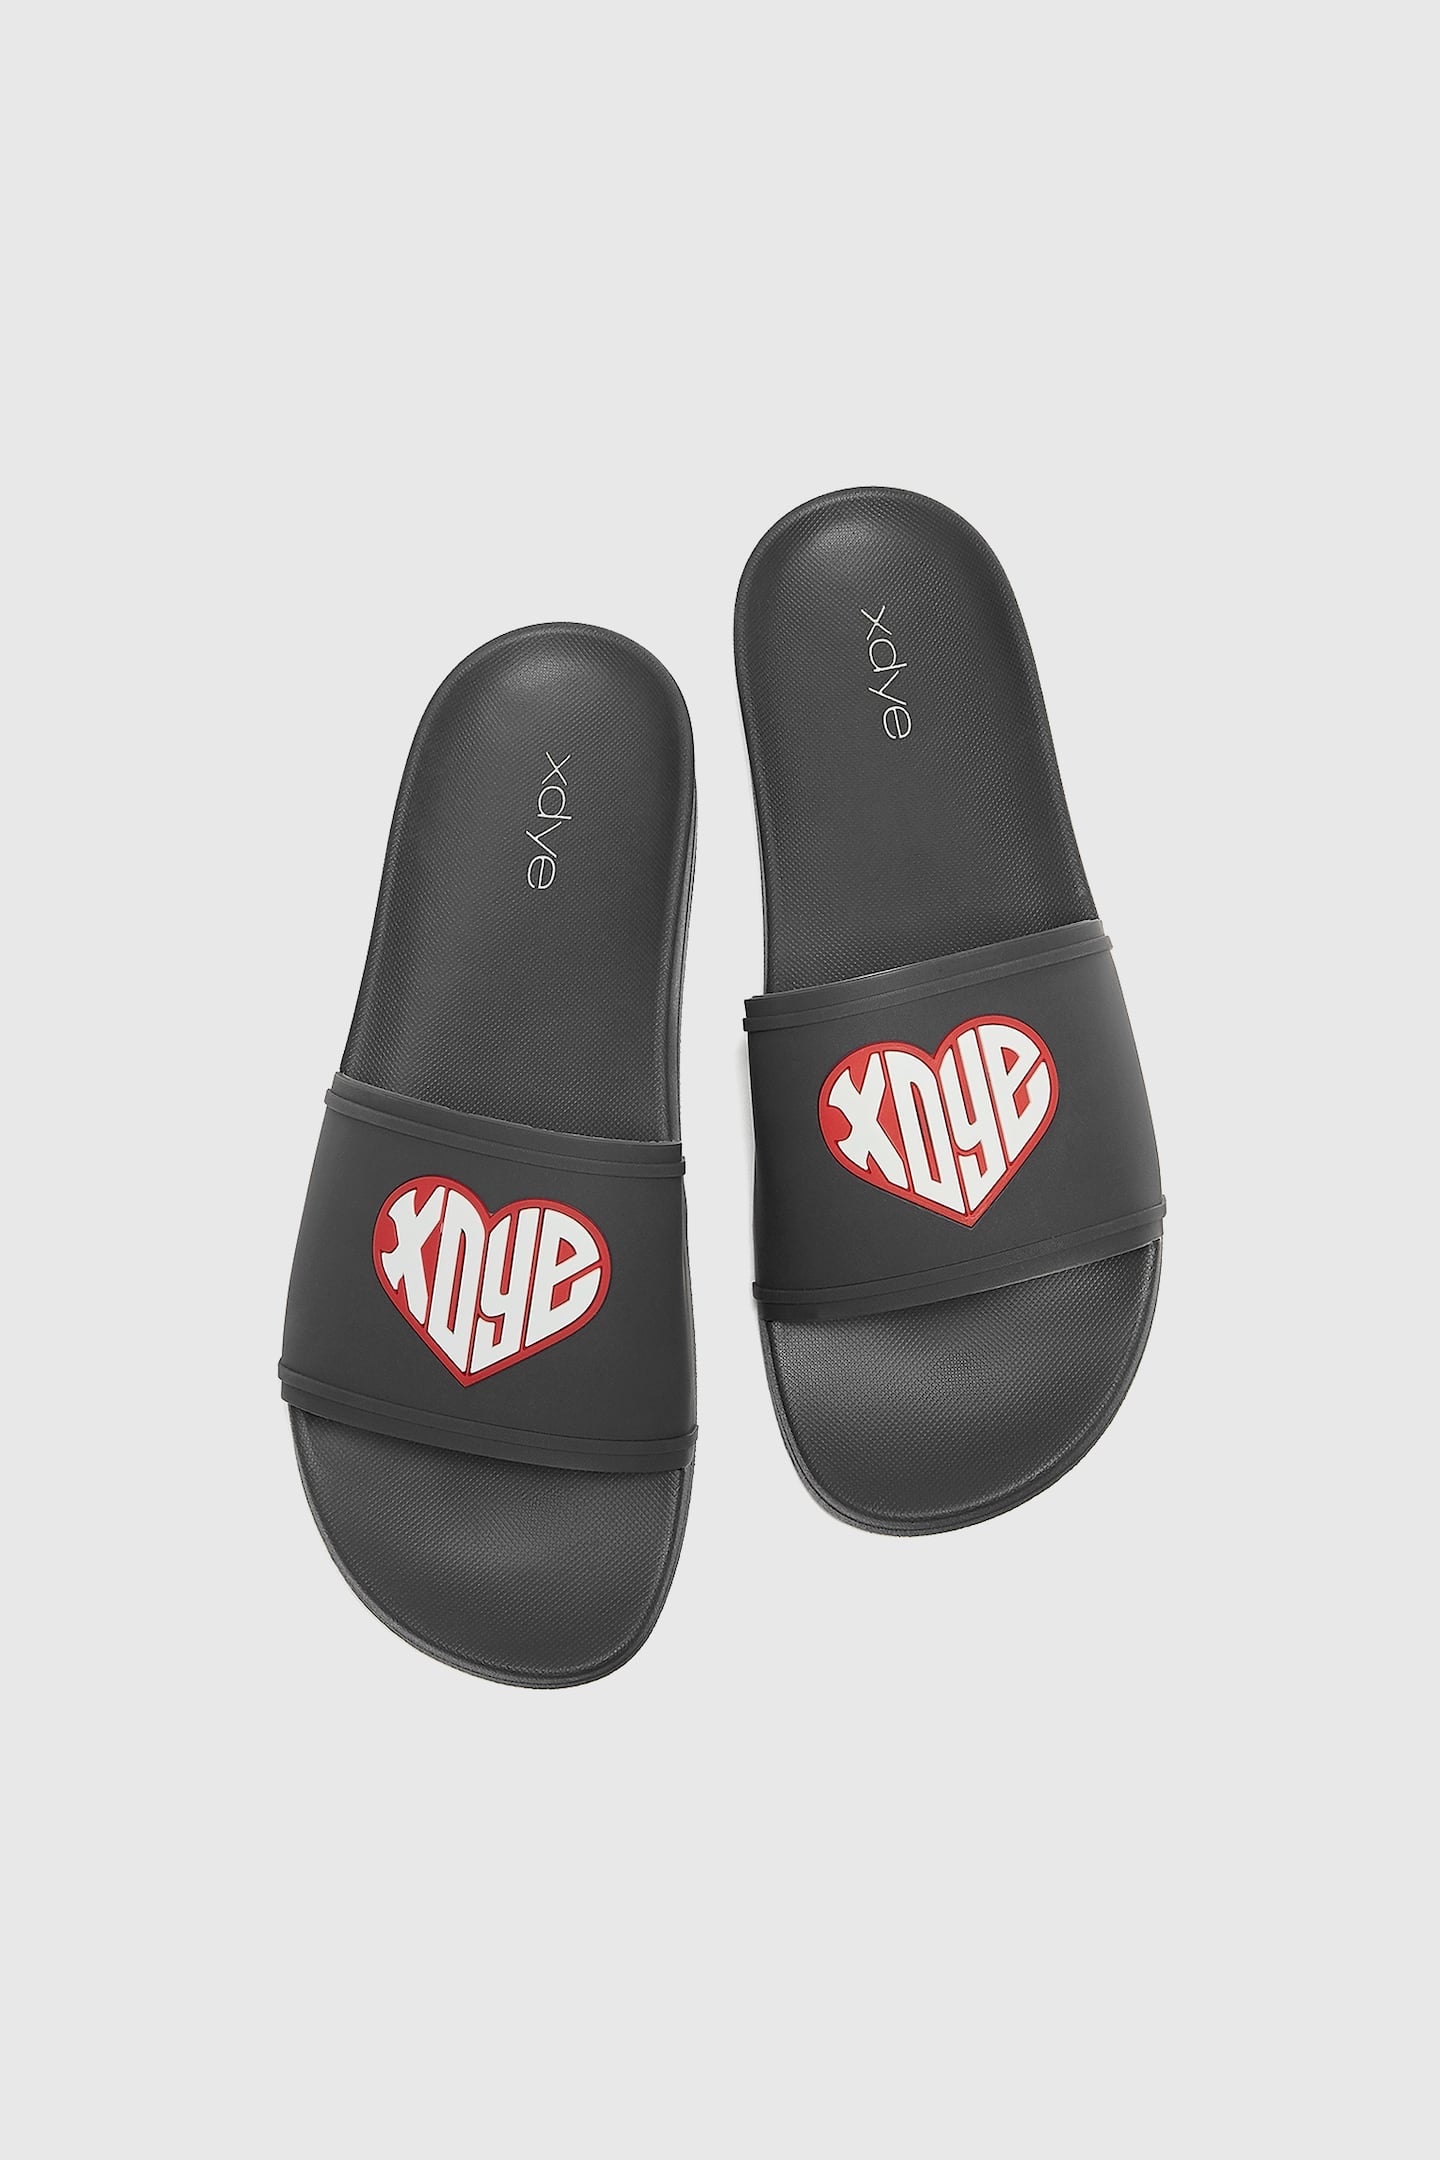 Pull&Bear XDYE slide sandals